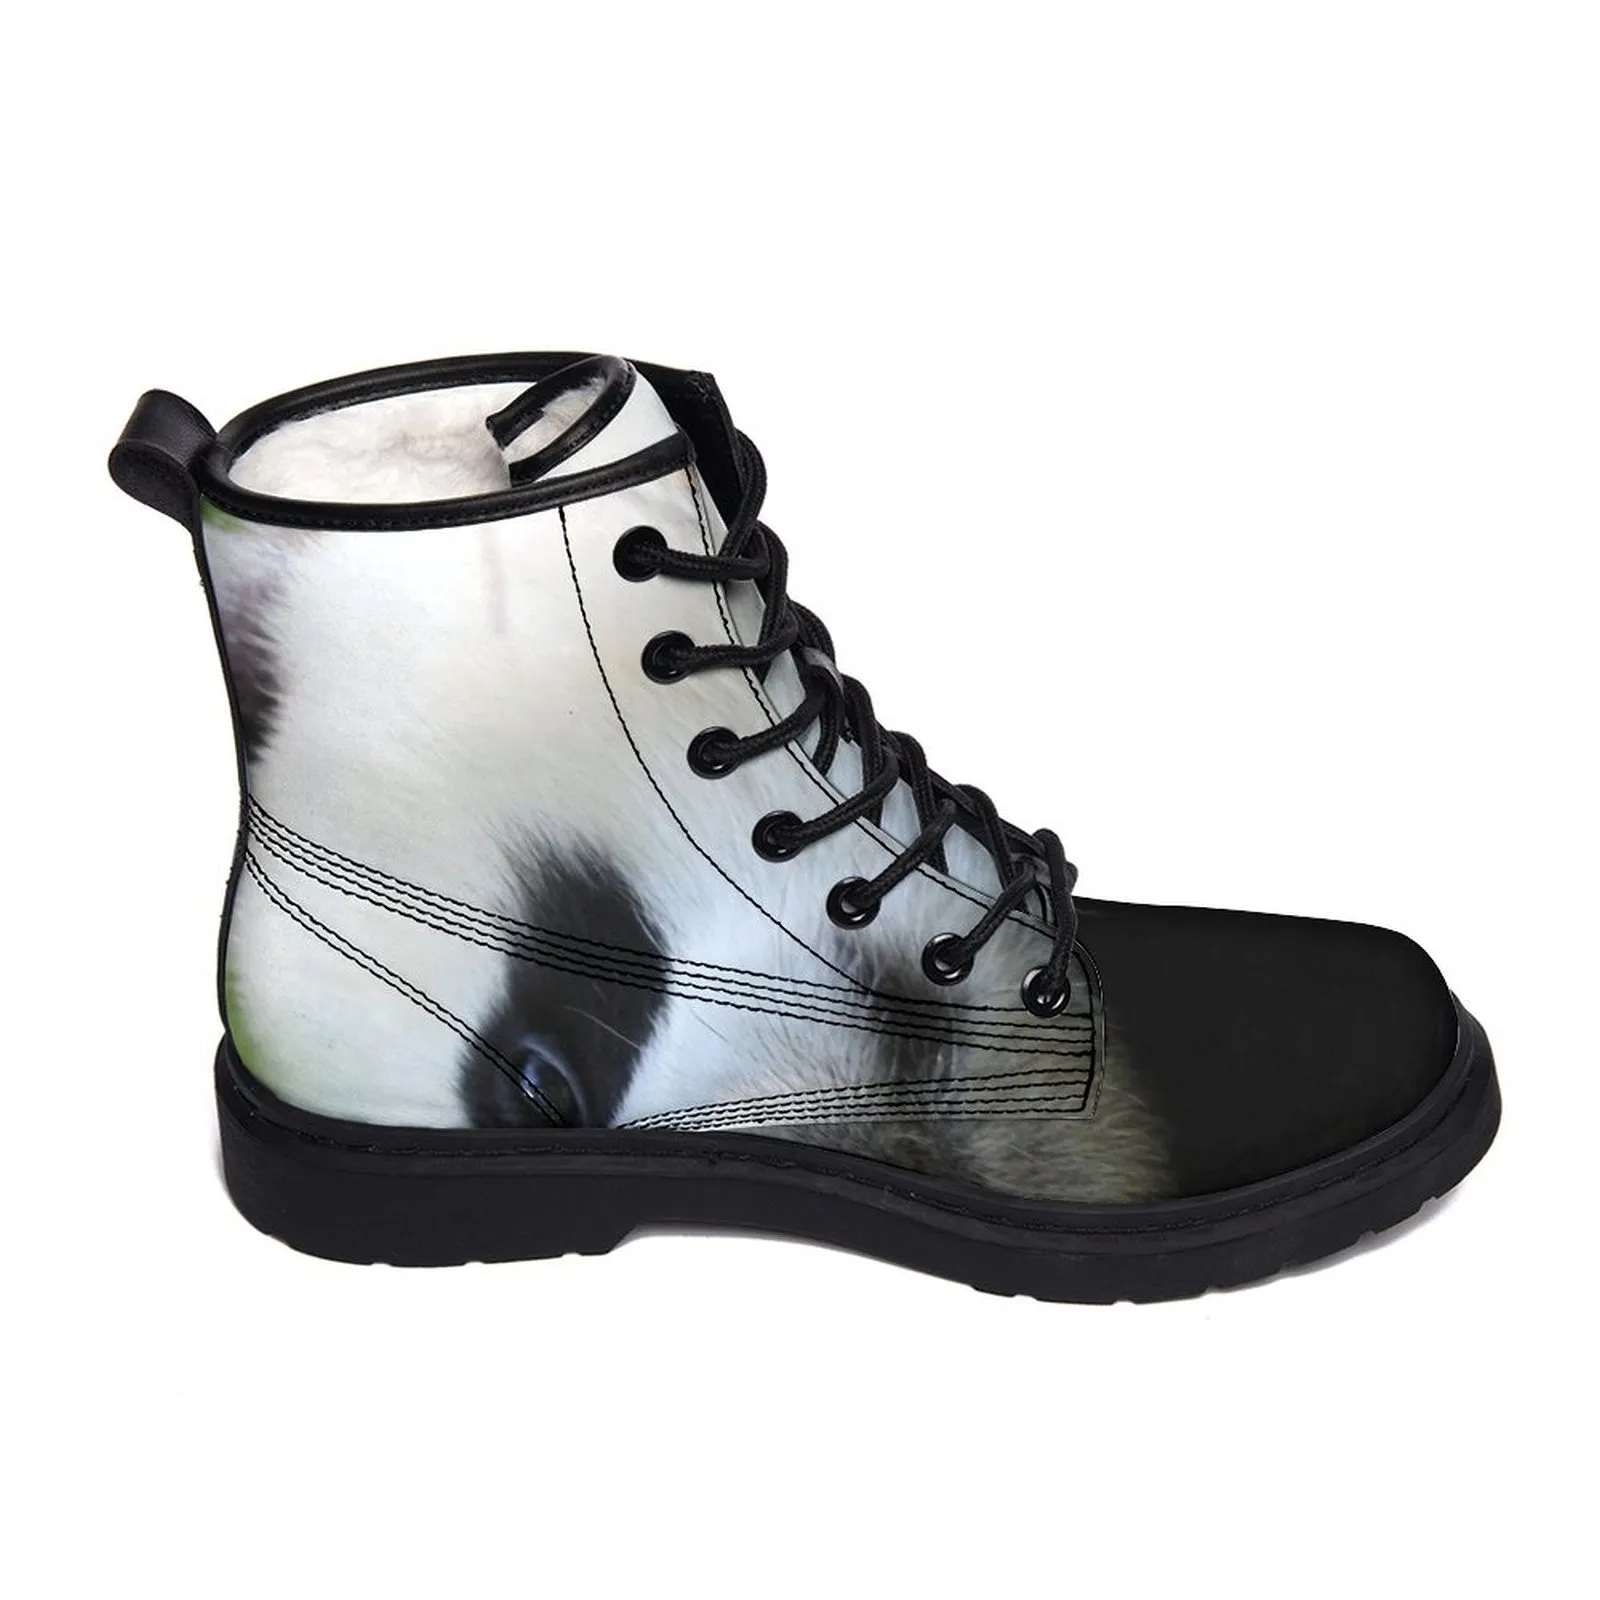 Hotsale designer stivali personalizzati per uomo scarpe da donna piattaforma casual da uomo allenatori da donna sneakers sport sports personalizzano il boot gai 40